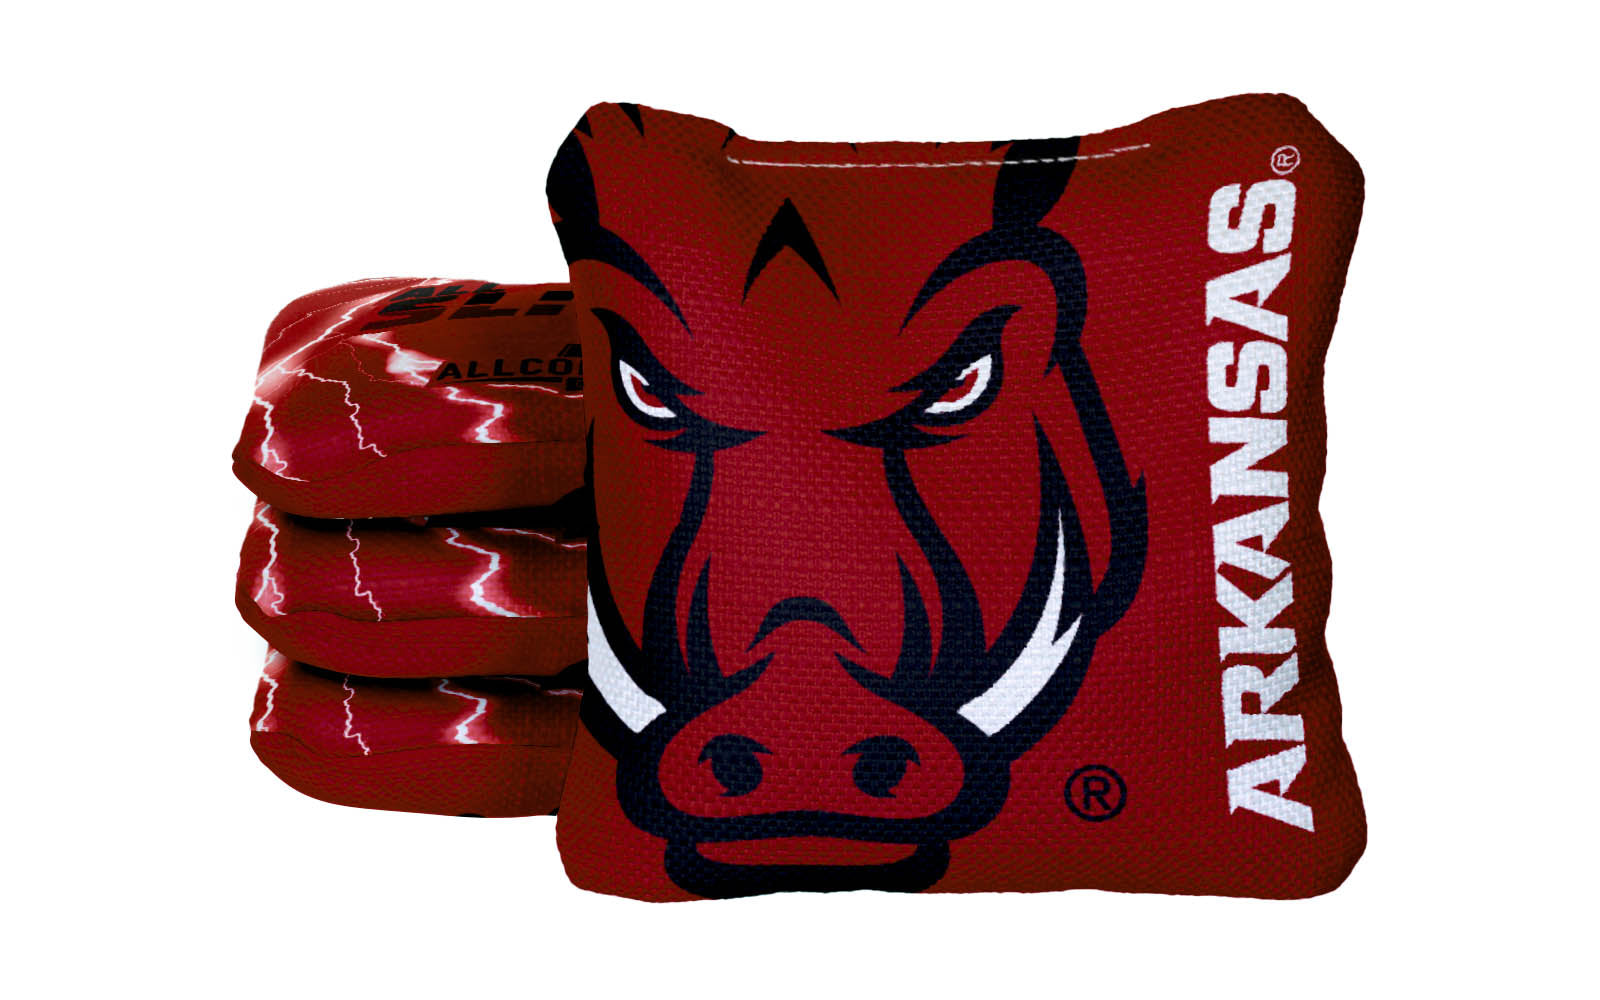 Officially Licensed Collegiate Cornhole Bags - All-Slide 2.0 - Set of 4 - University of Arkansas